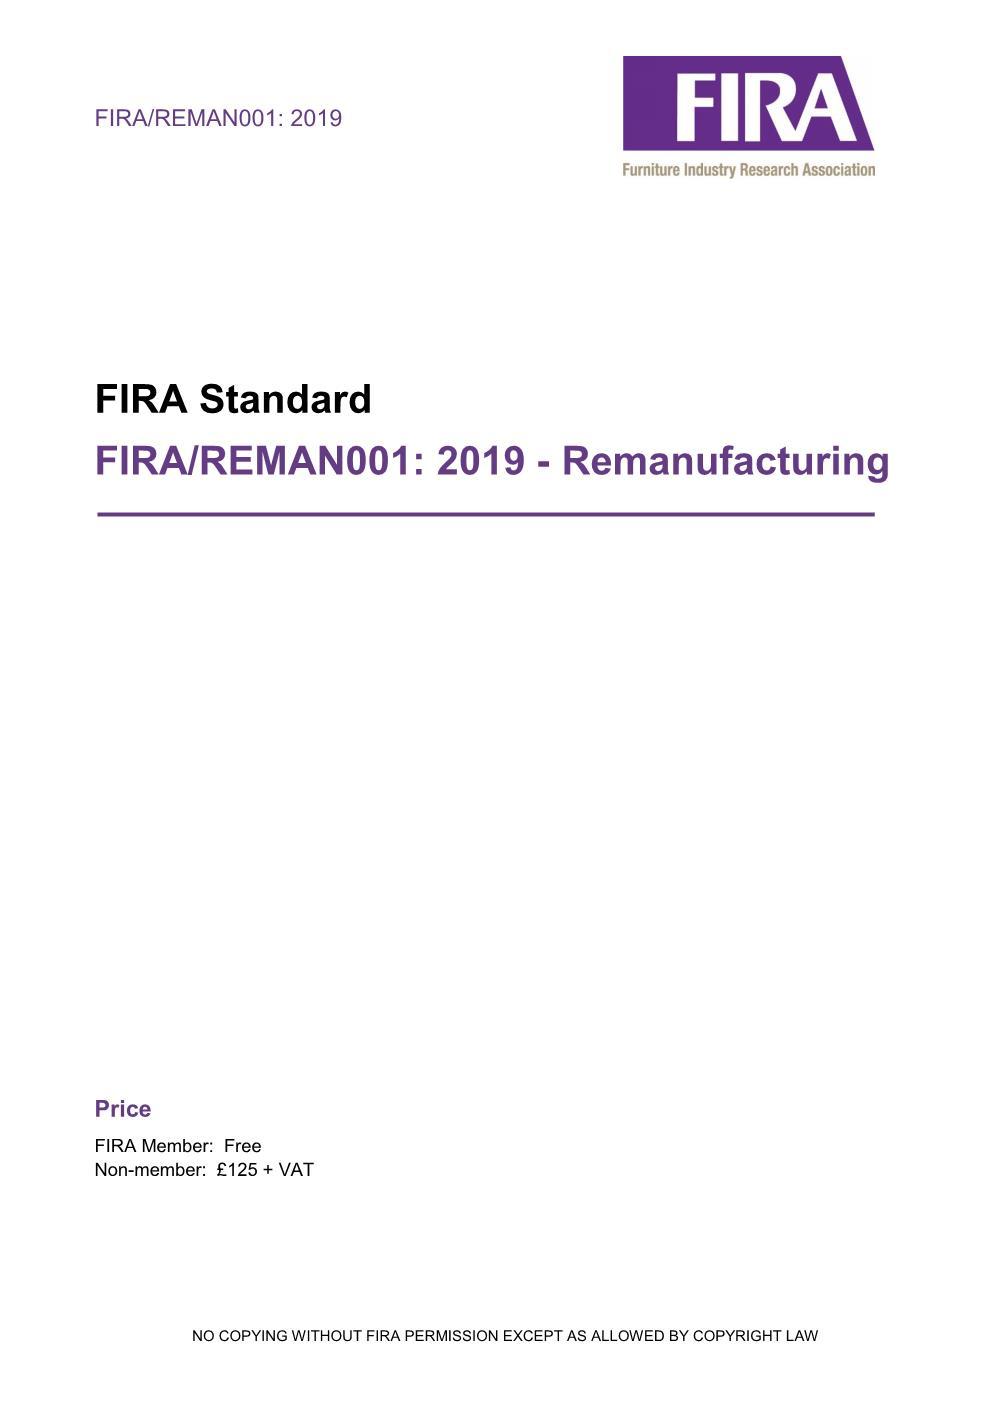 Remanufacturing: FIRA Standard FIRA/REMAN001: 2019